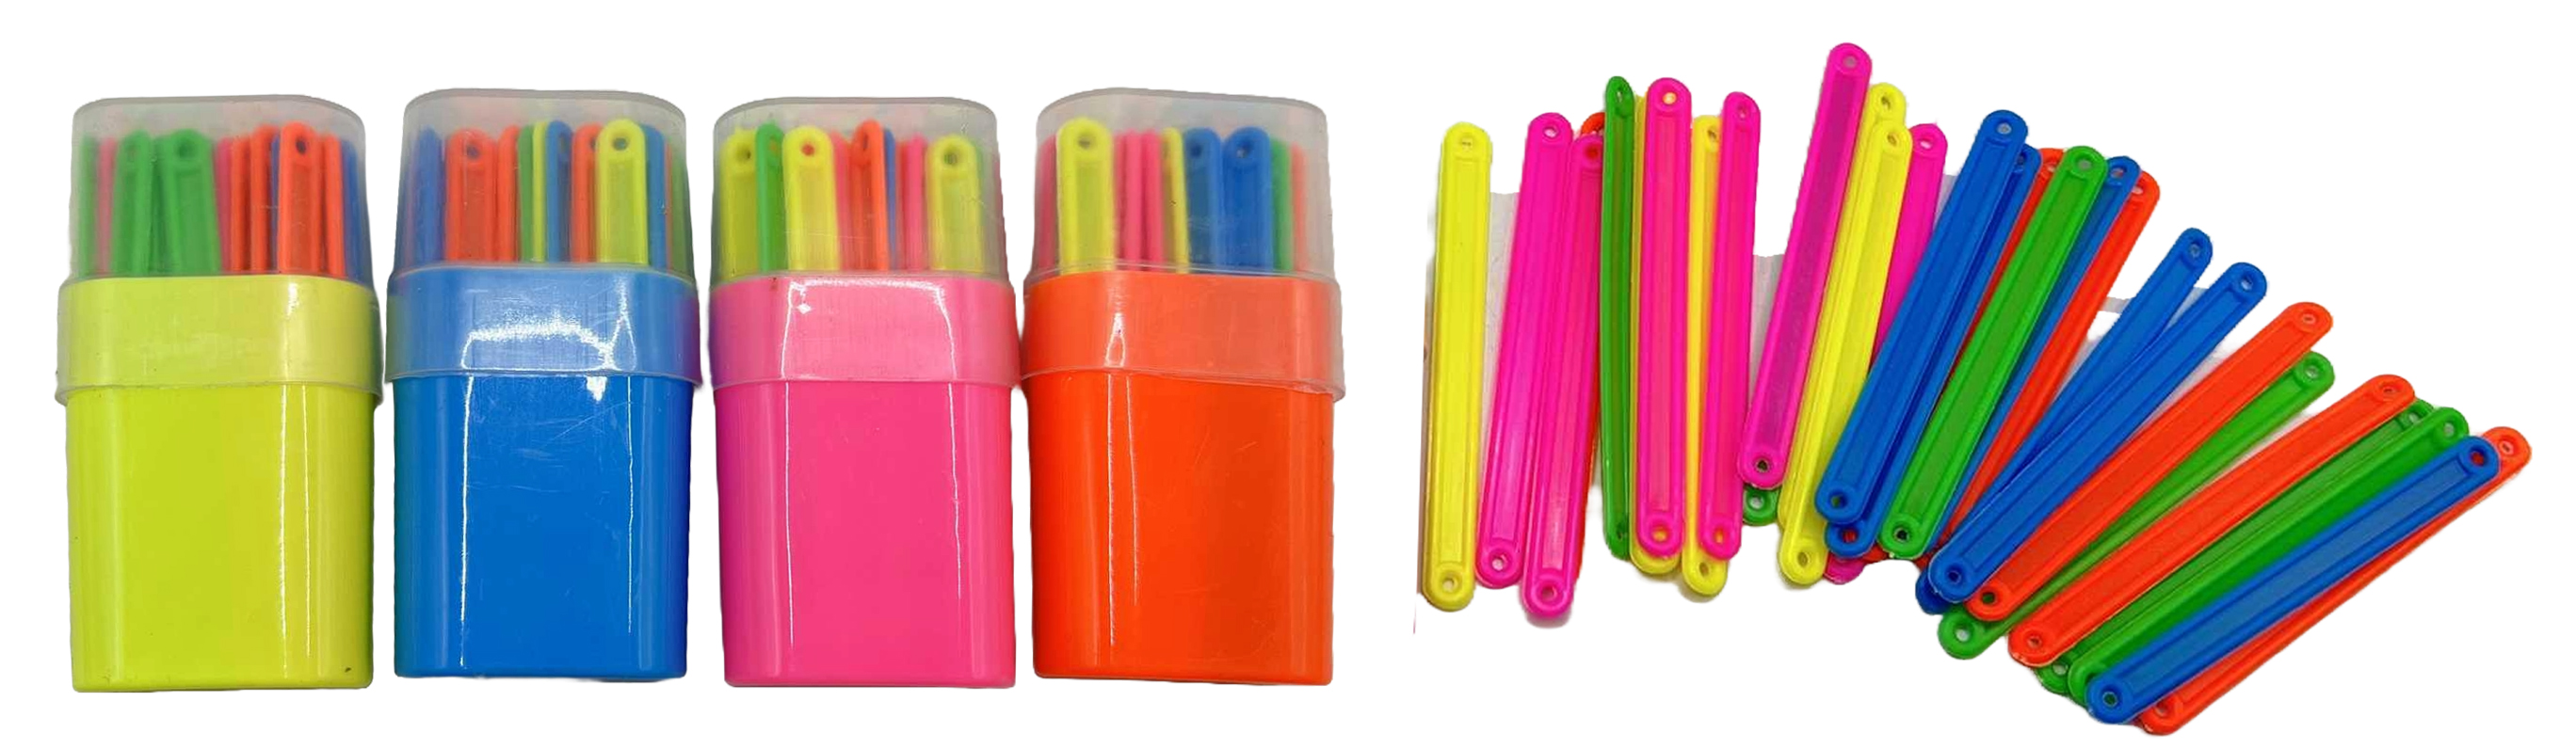 Рахункові палички 30штук кольорові у пластиковій упаковці